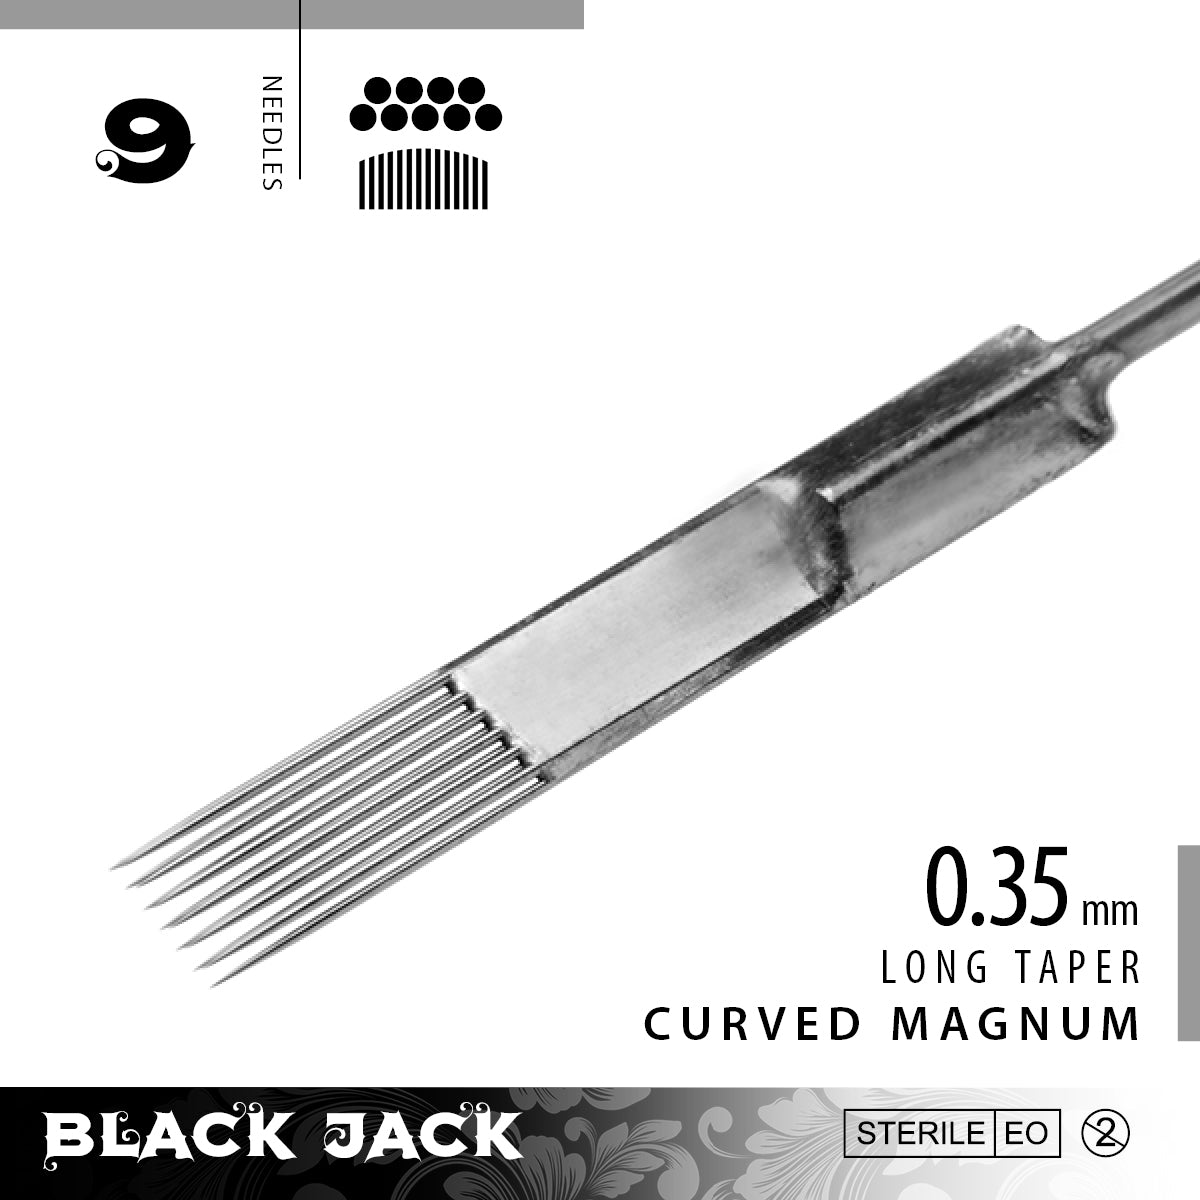 Black Jack Curved Magnum Shader Bar Needles